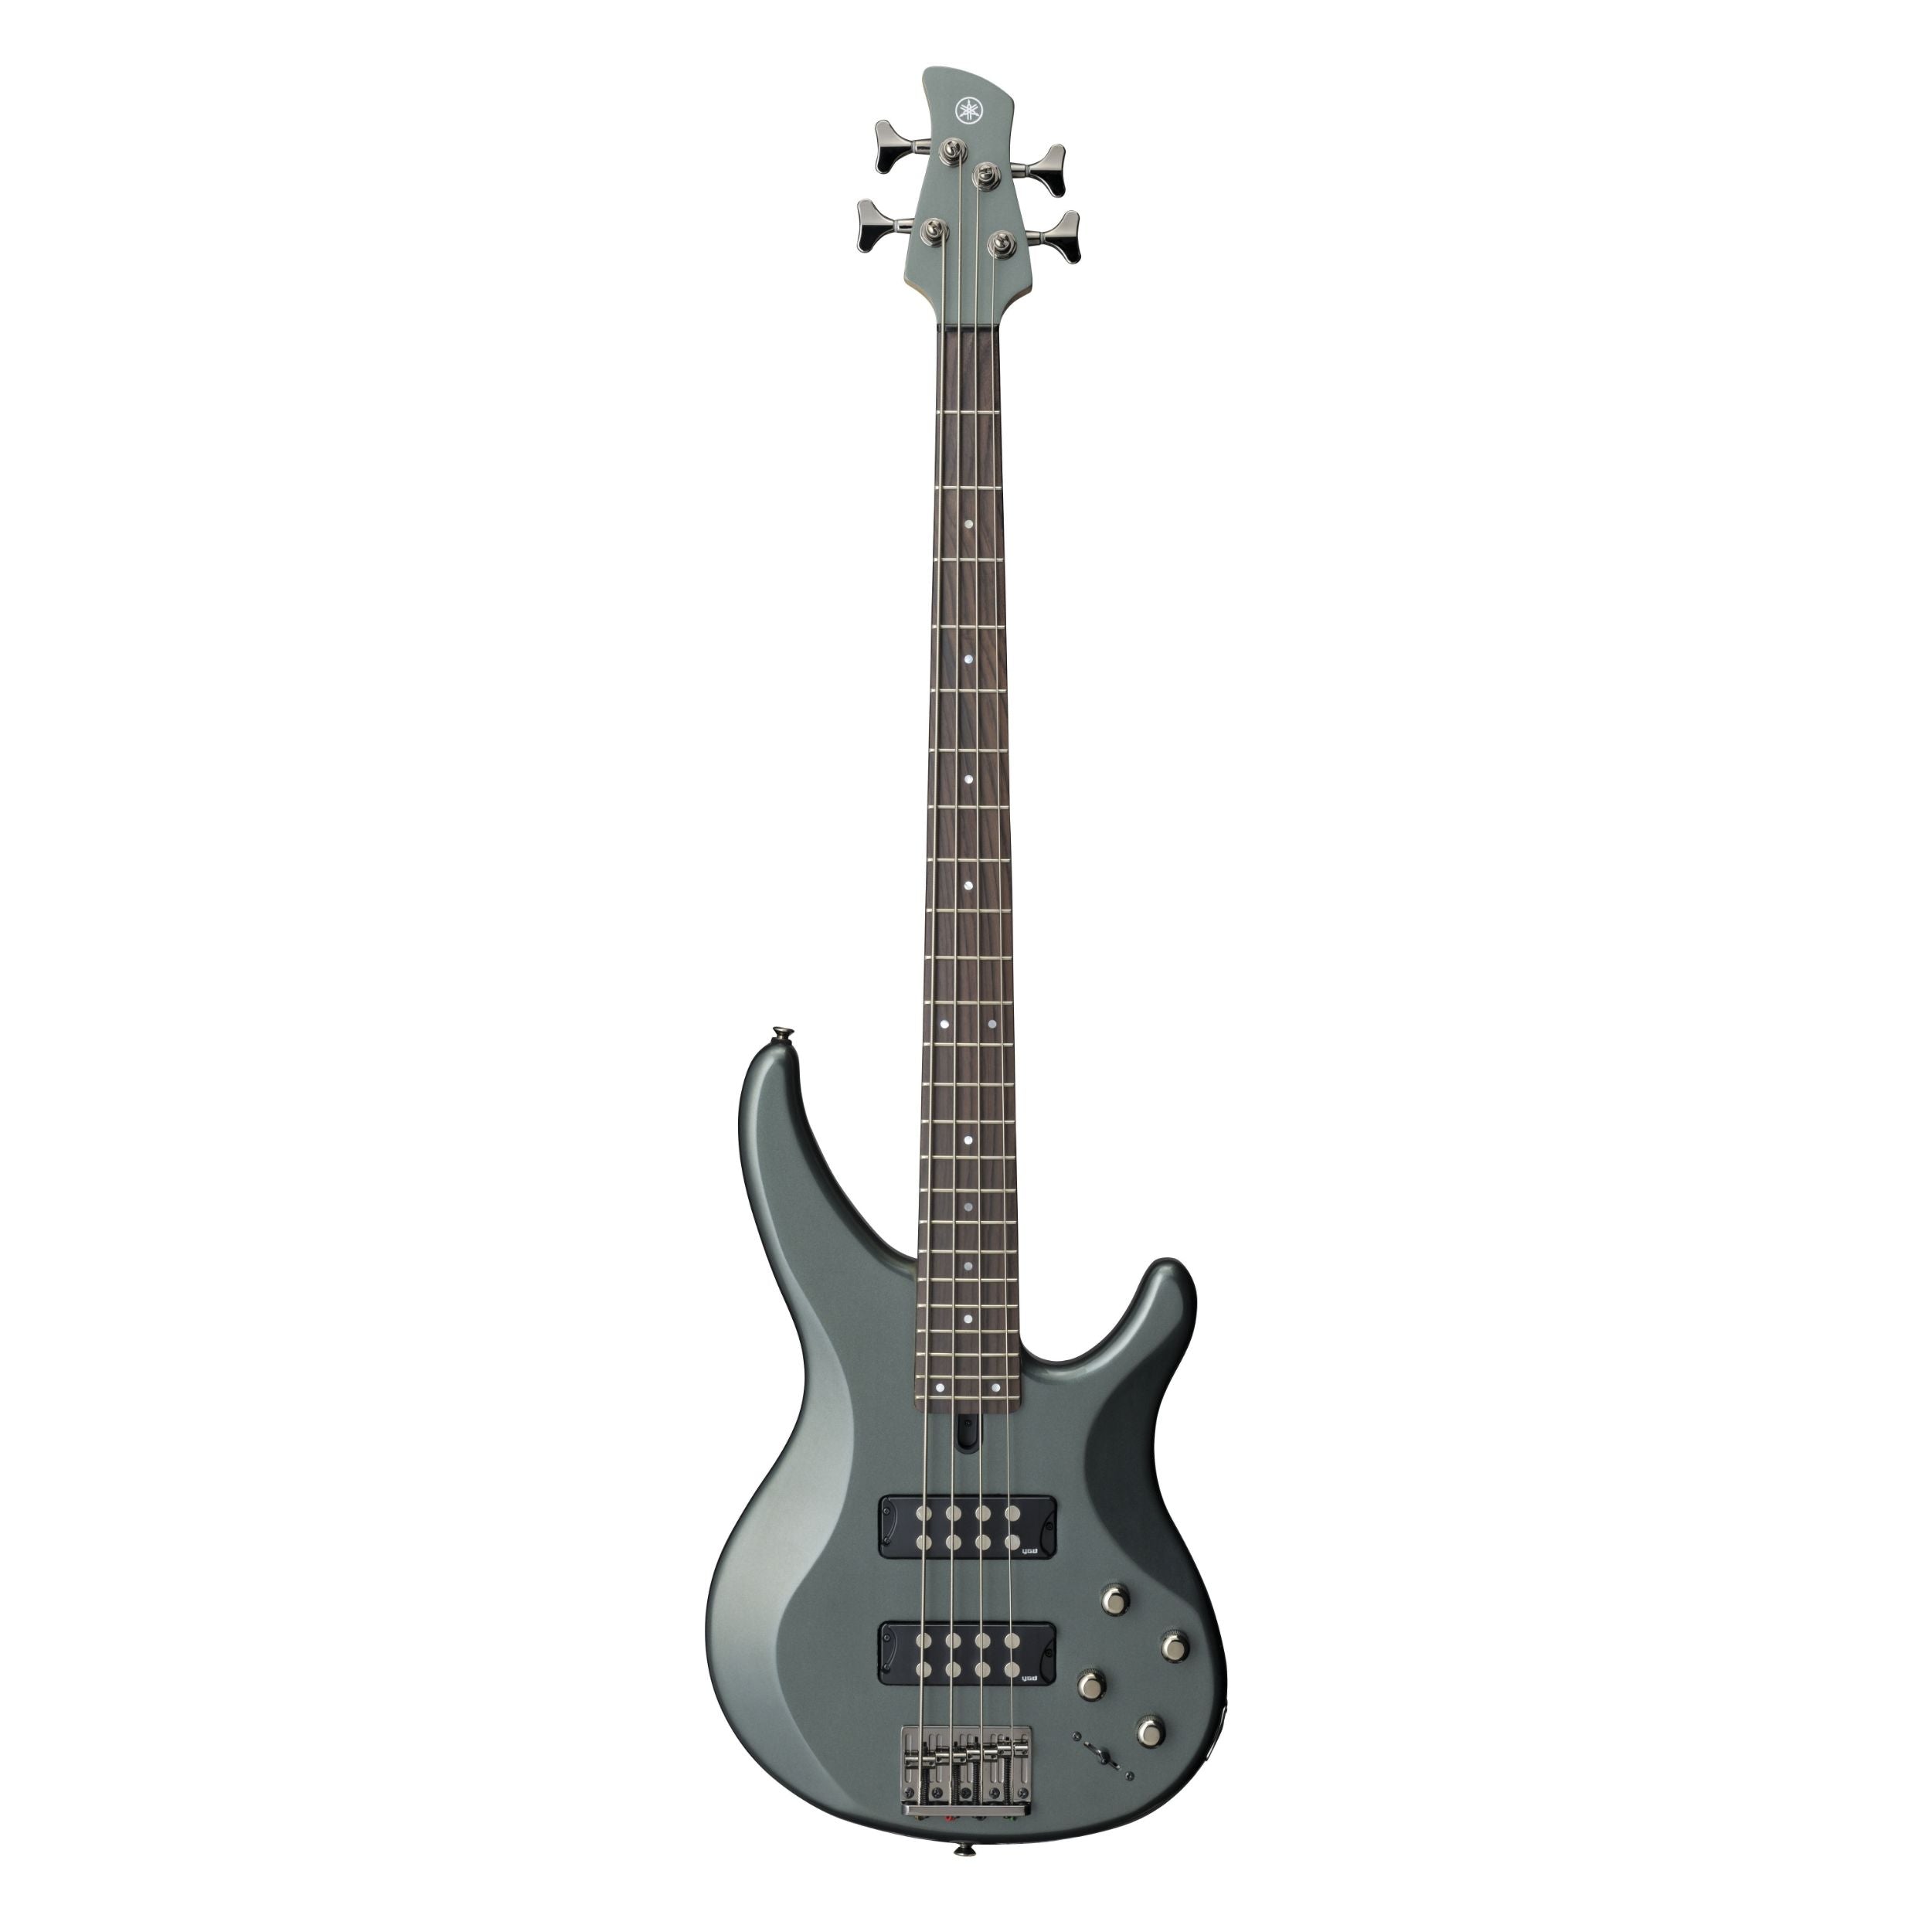 Yamaha TRBX304 Bass Guitar, Mist Green